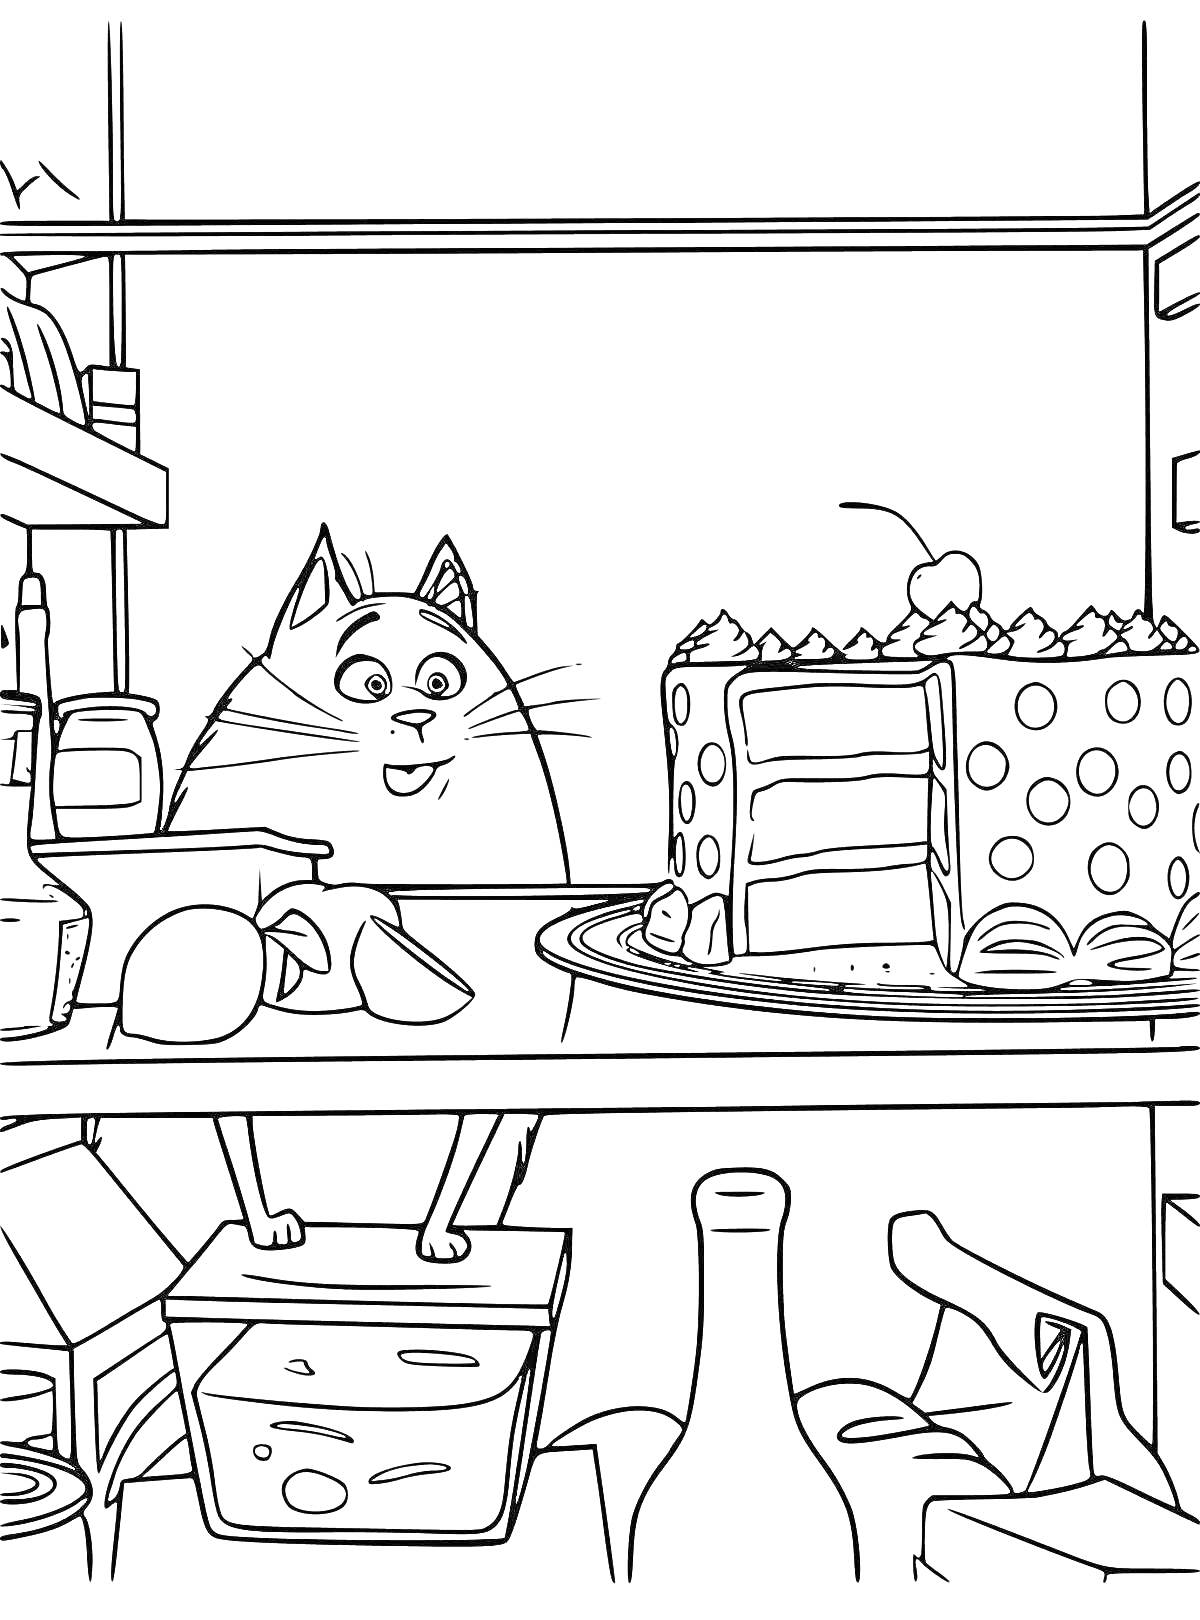 Раскраска Кот в холодильнике с тортом и продуктами